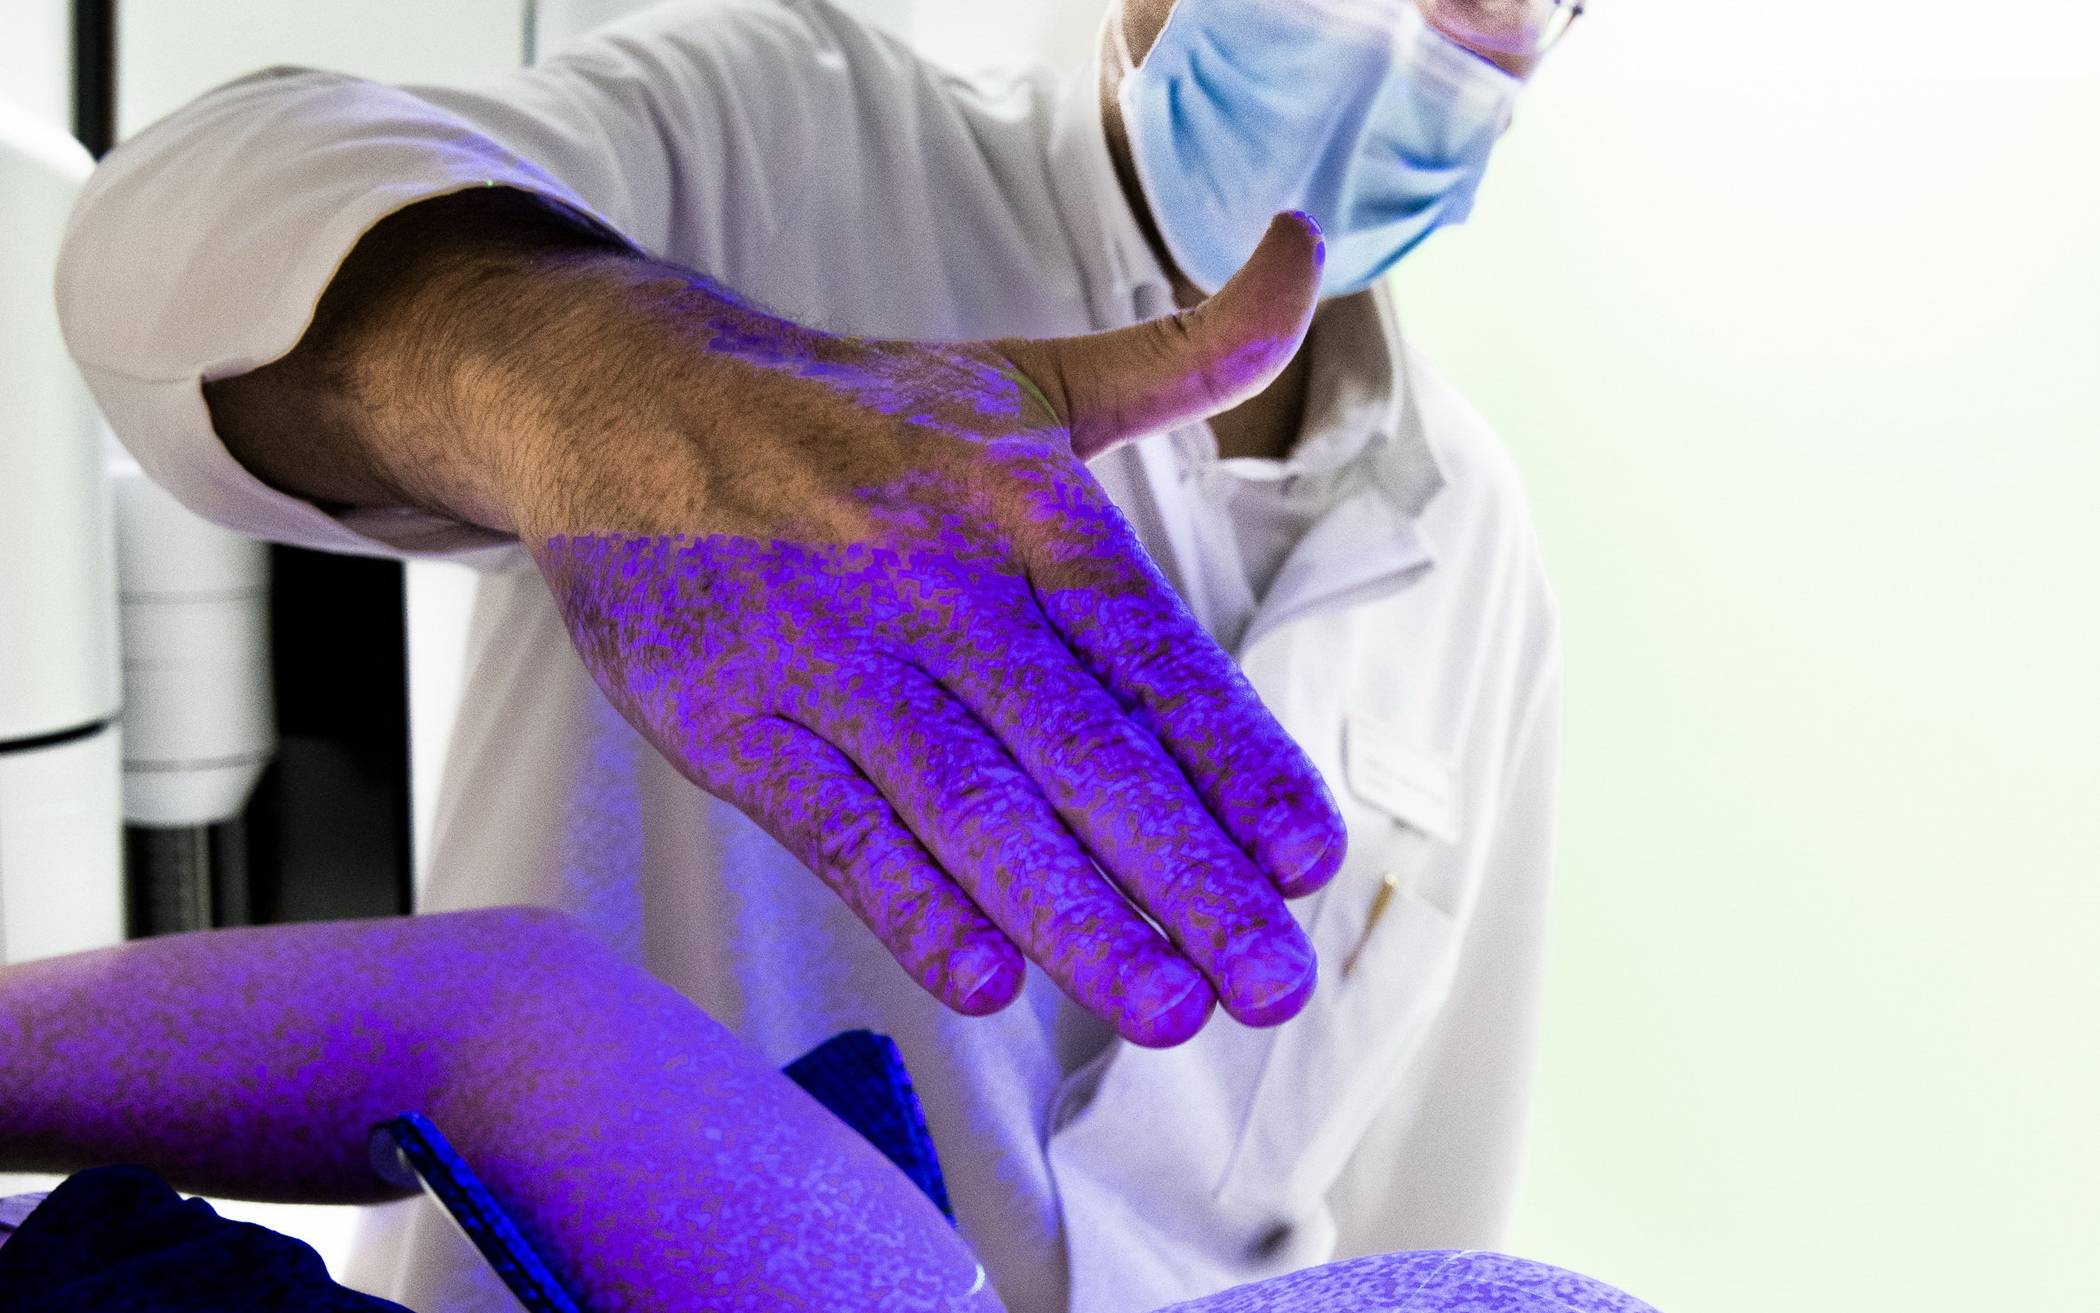  Chefarzt Prof. Marc Piroth zeigt mit seiner Hand die Lichtpunkte, die den Körper abtasten 